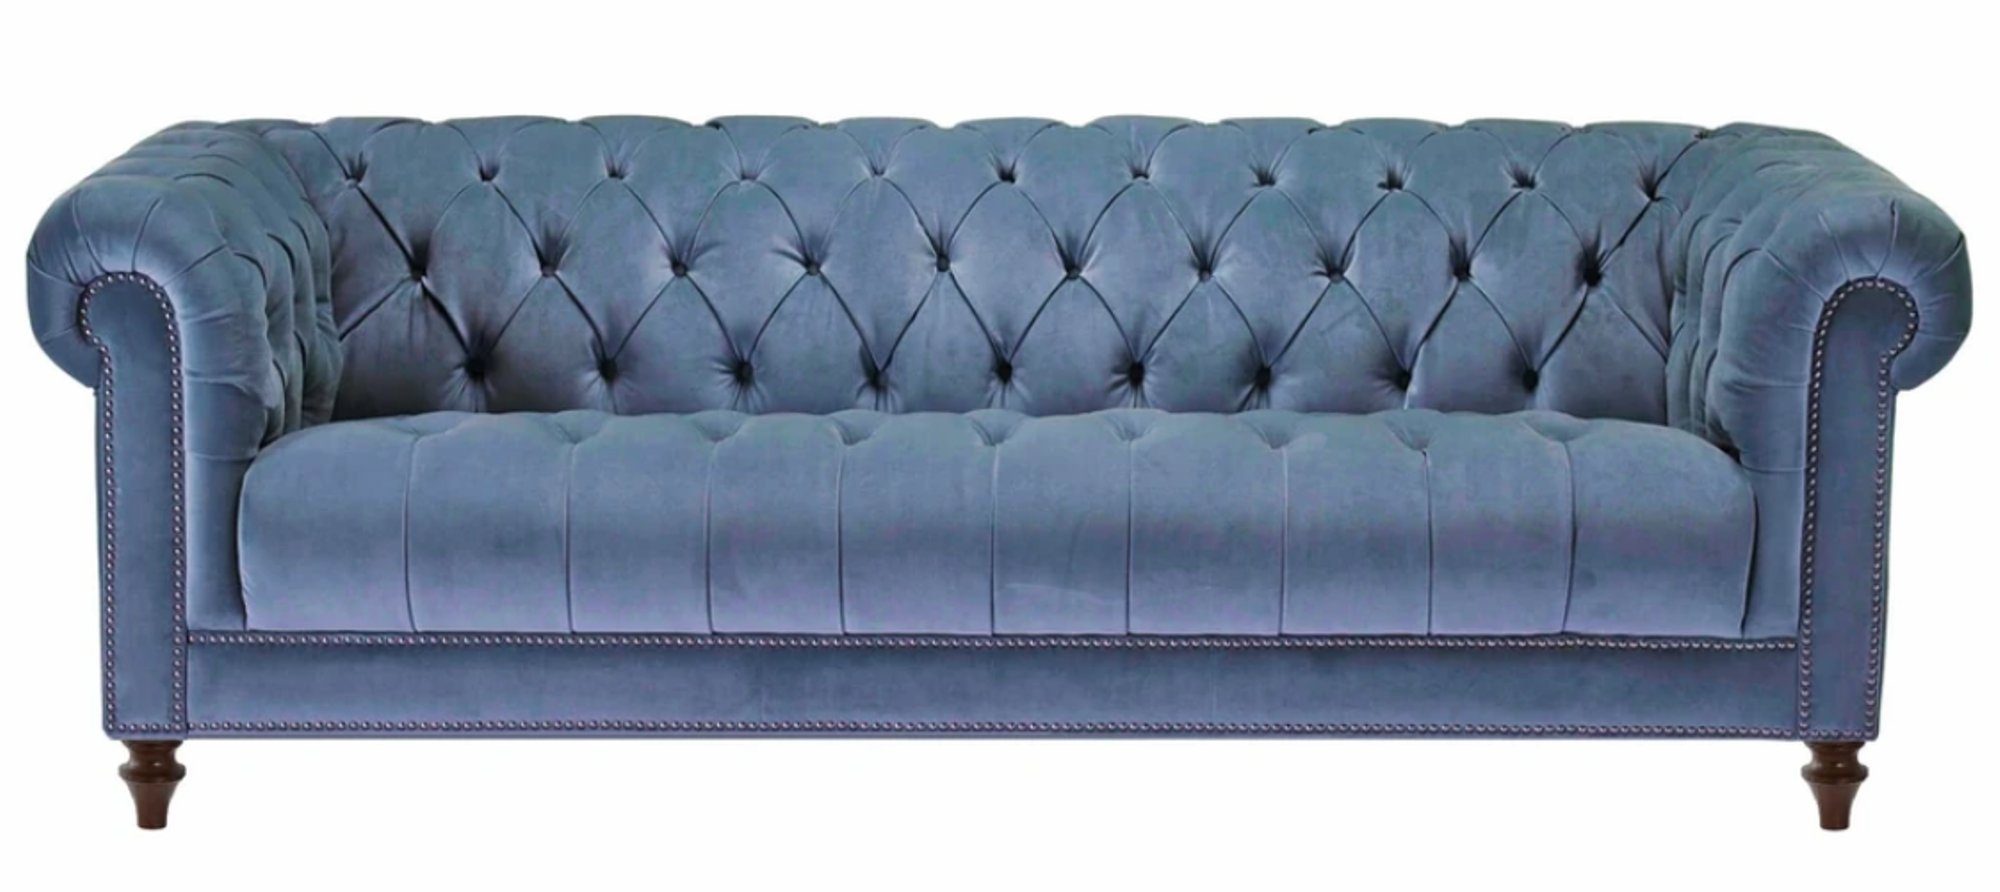 JVmoebel Chesterfield-Sofa, Hellblau Dreisitzer Stoff Chesterfield Design Couchen Polster Sofas